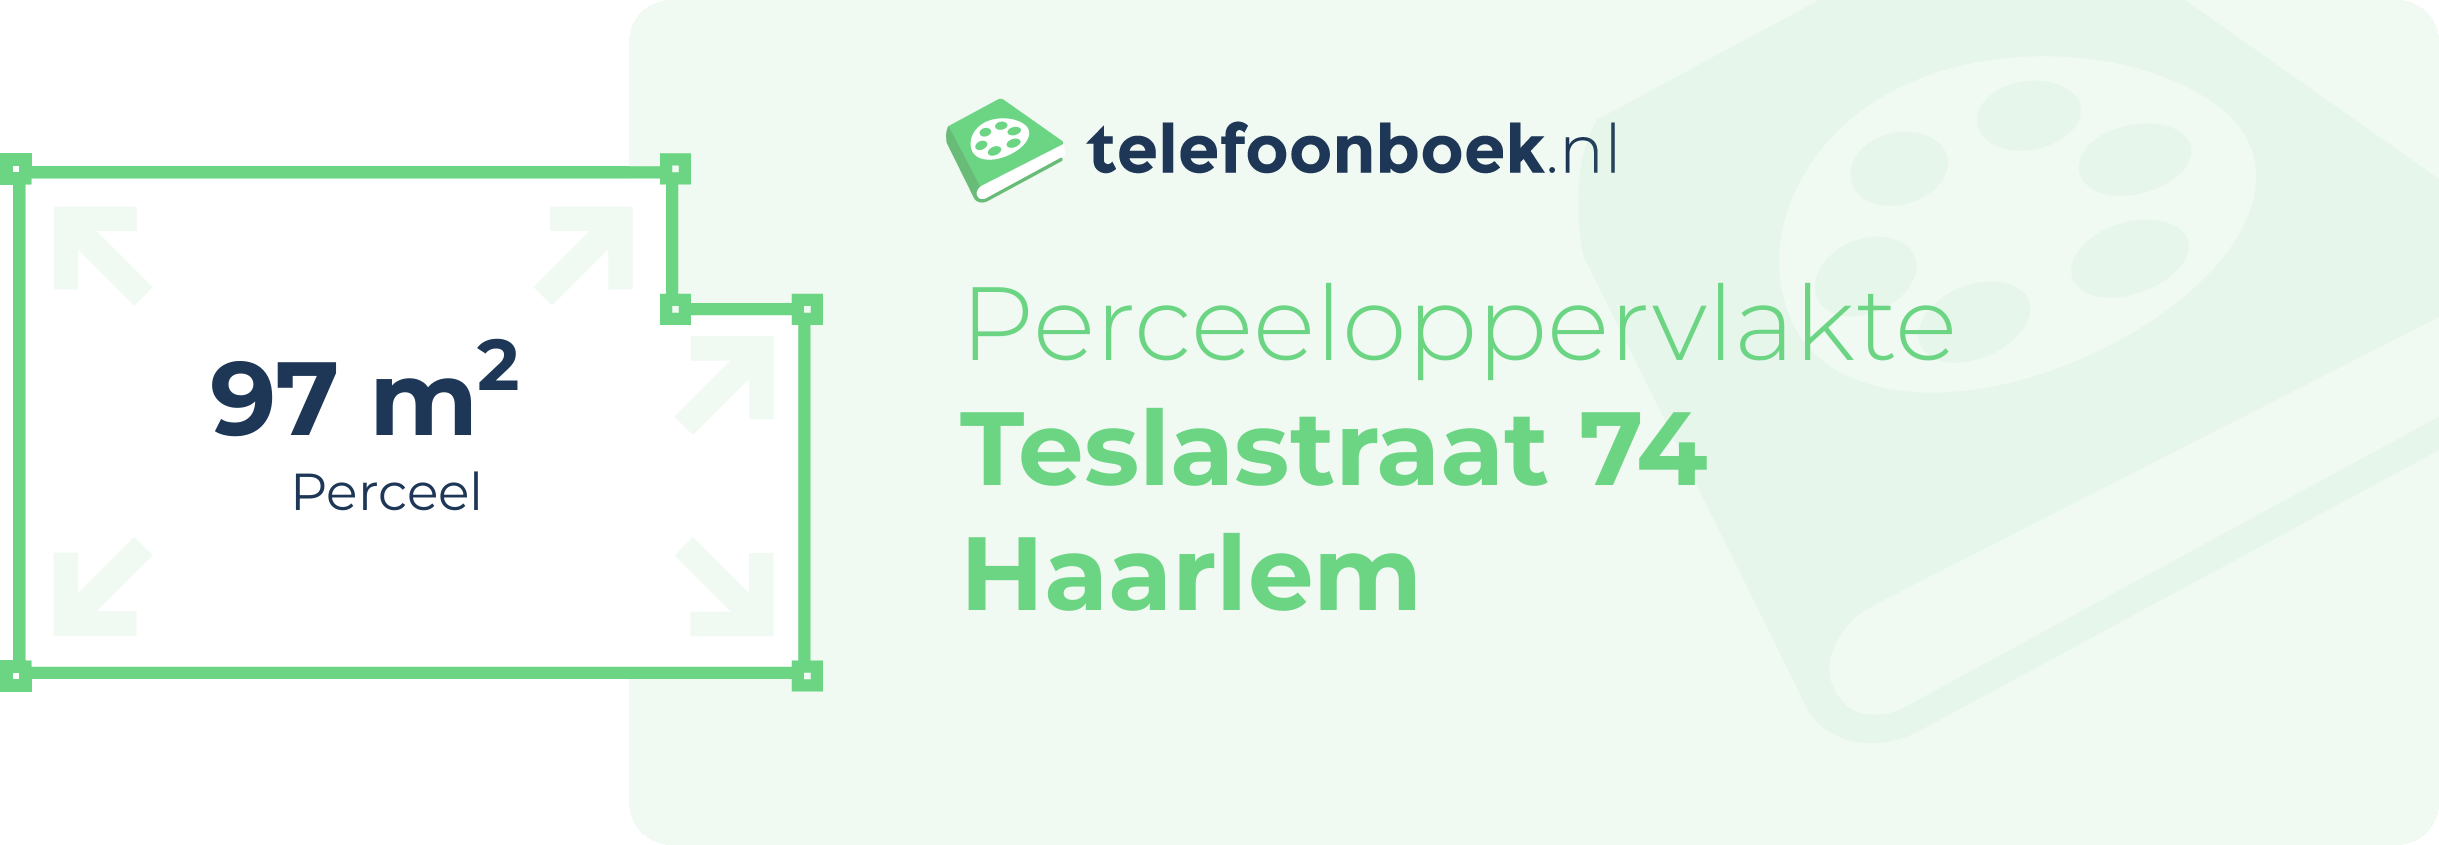 Perceeloppervlakte Teslastraat 74 Haarlem